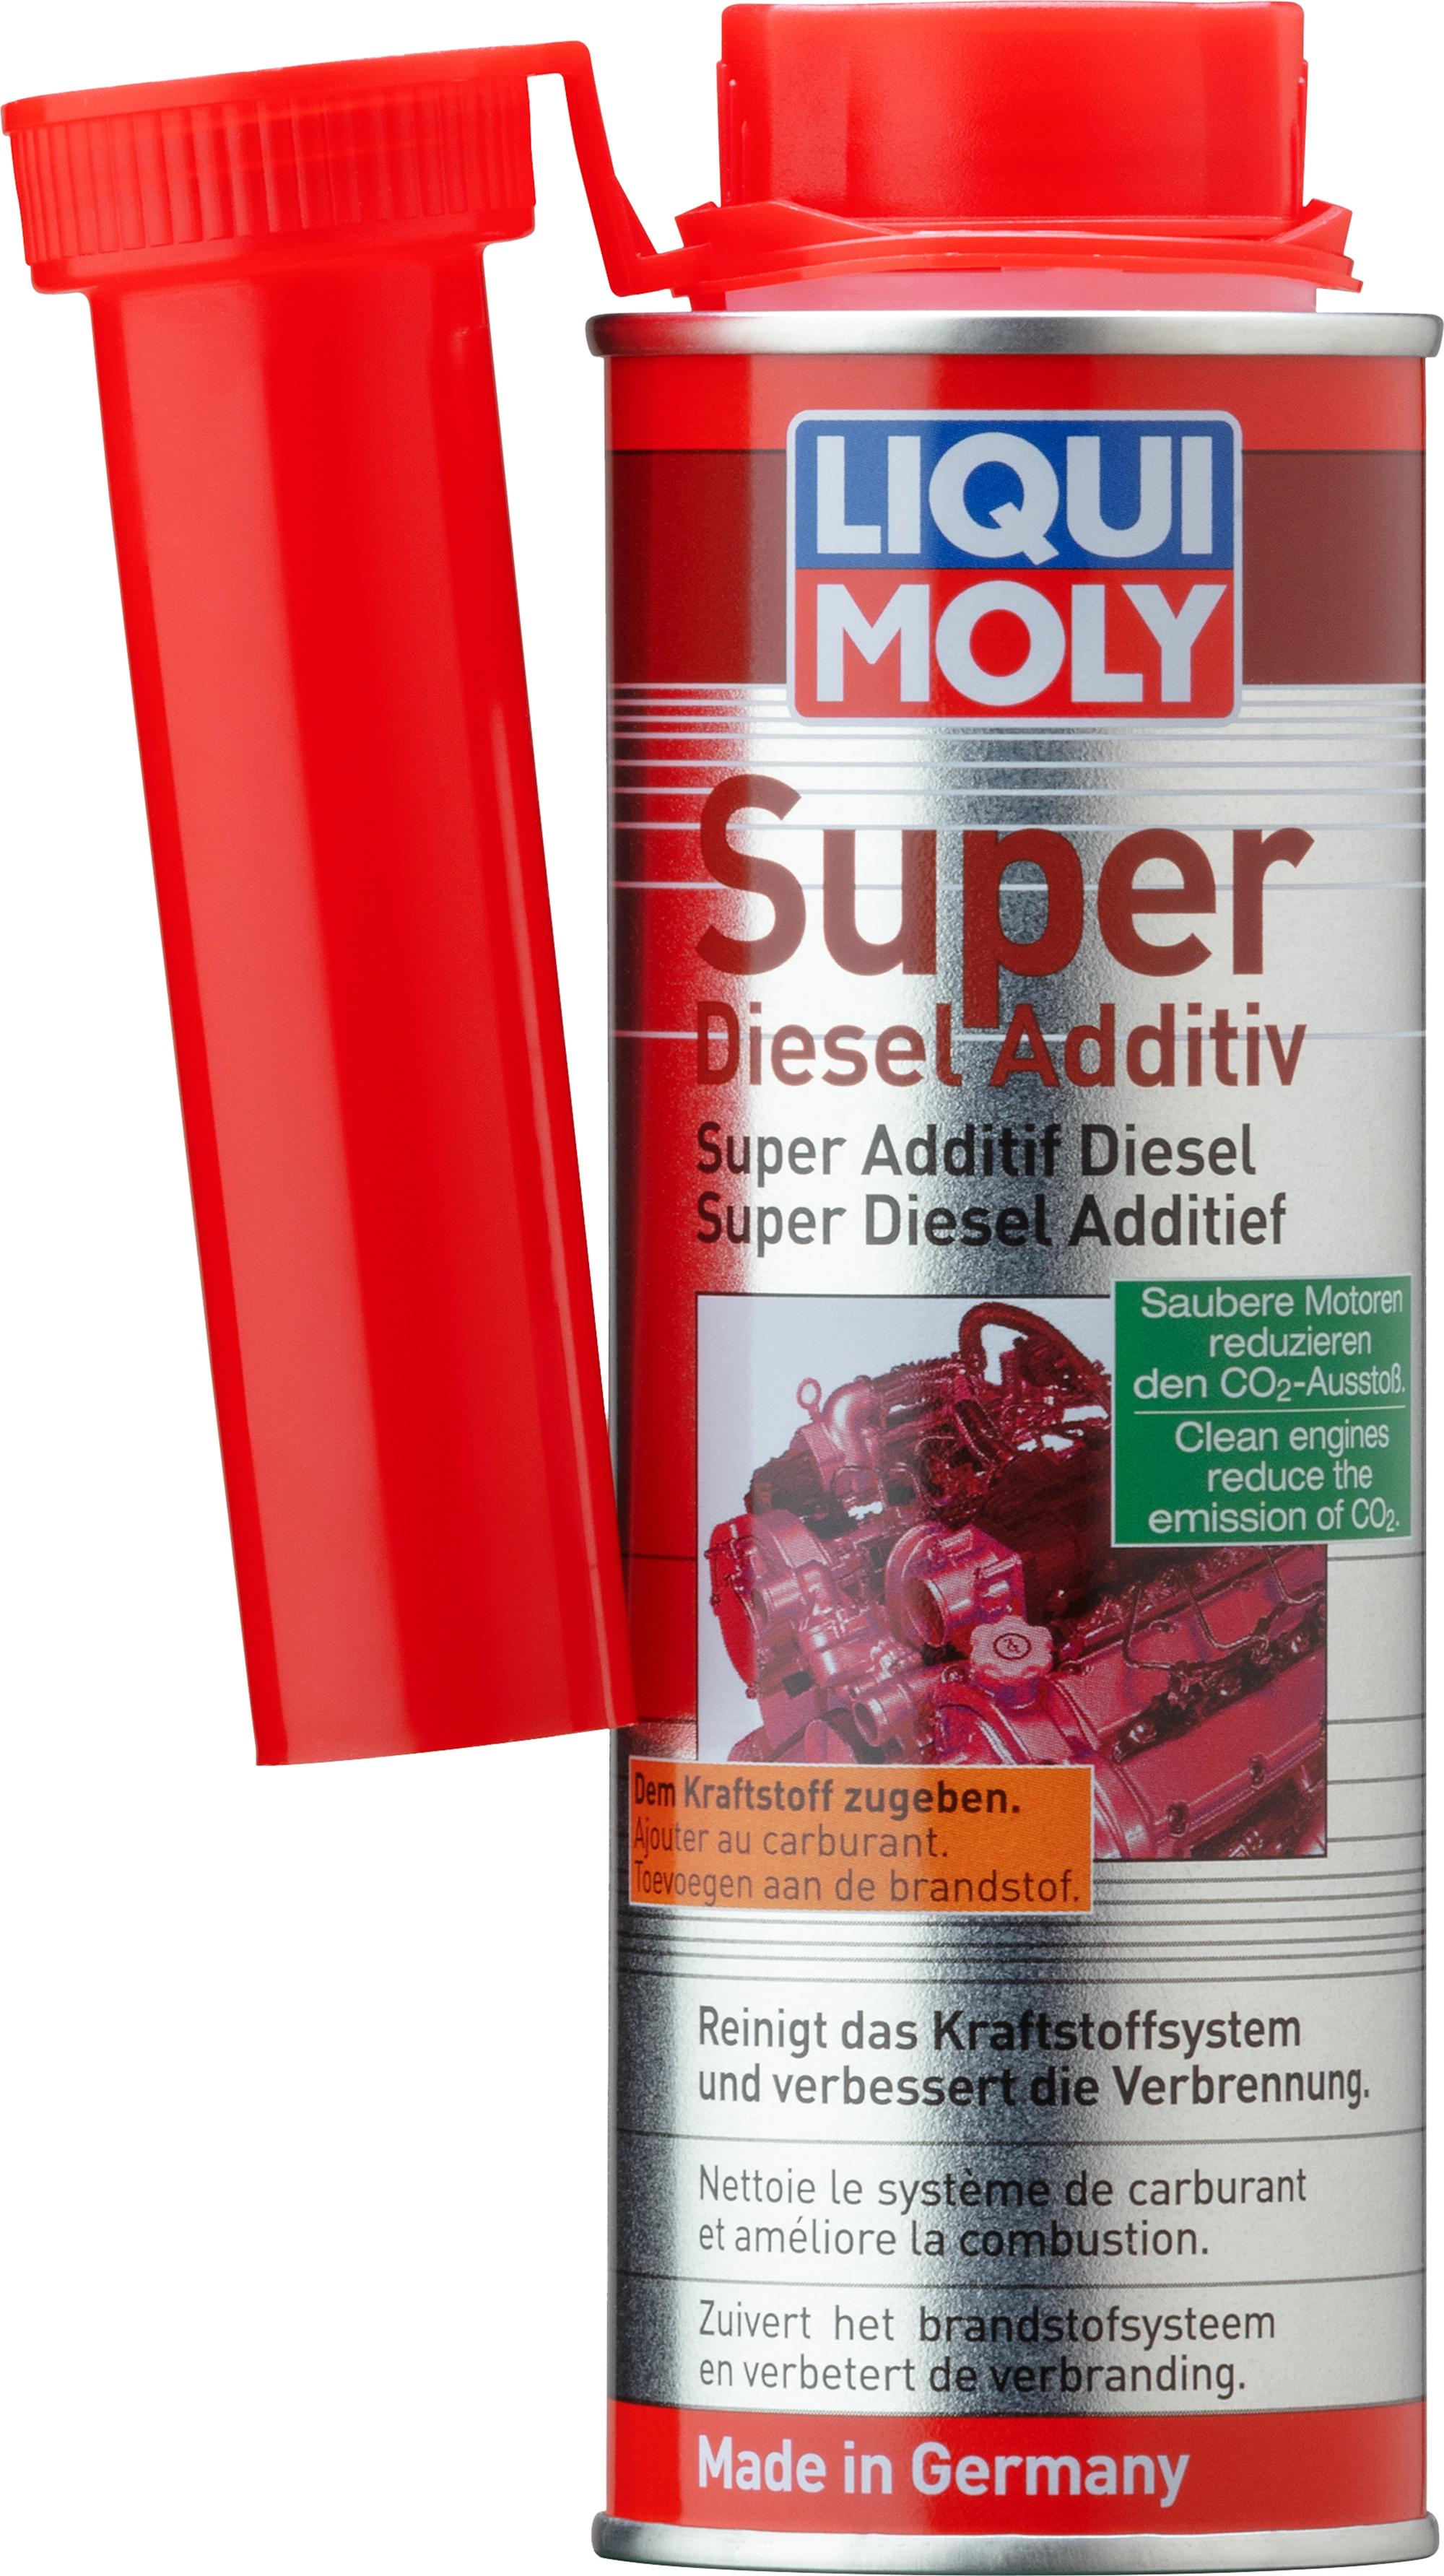 Liqui Moly Bremsen-Anti-Quietsch-Paste 100 g kaufen bei OBI